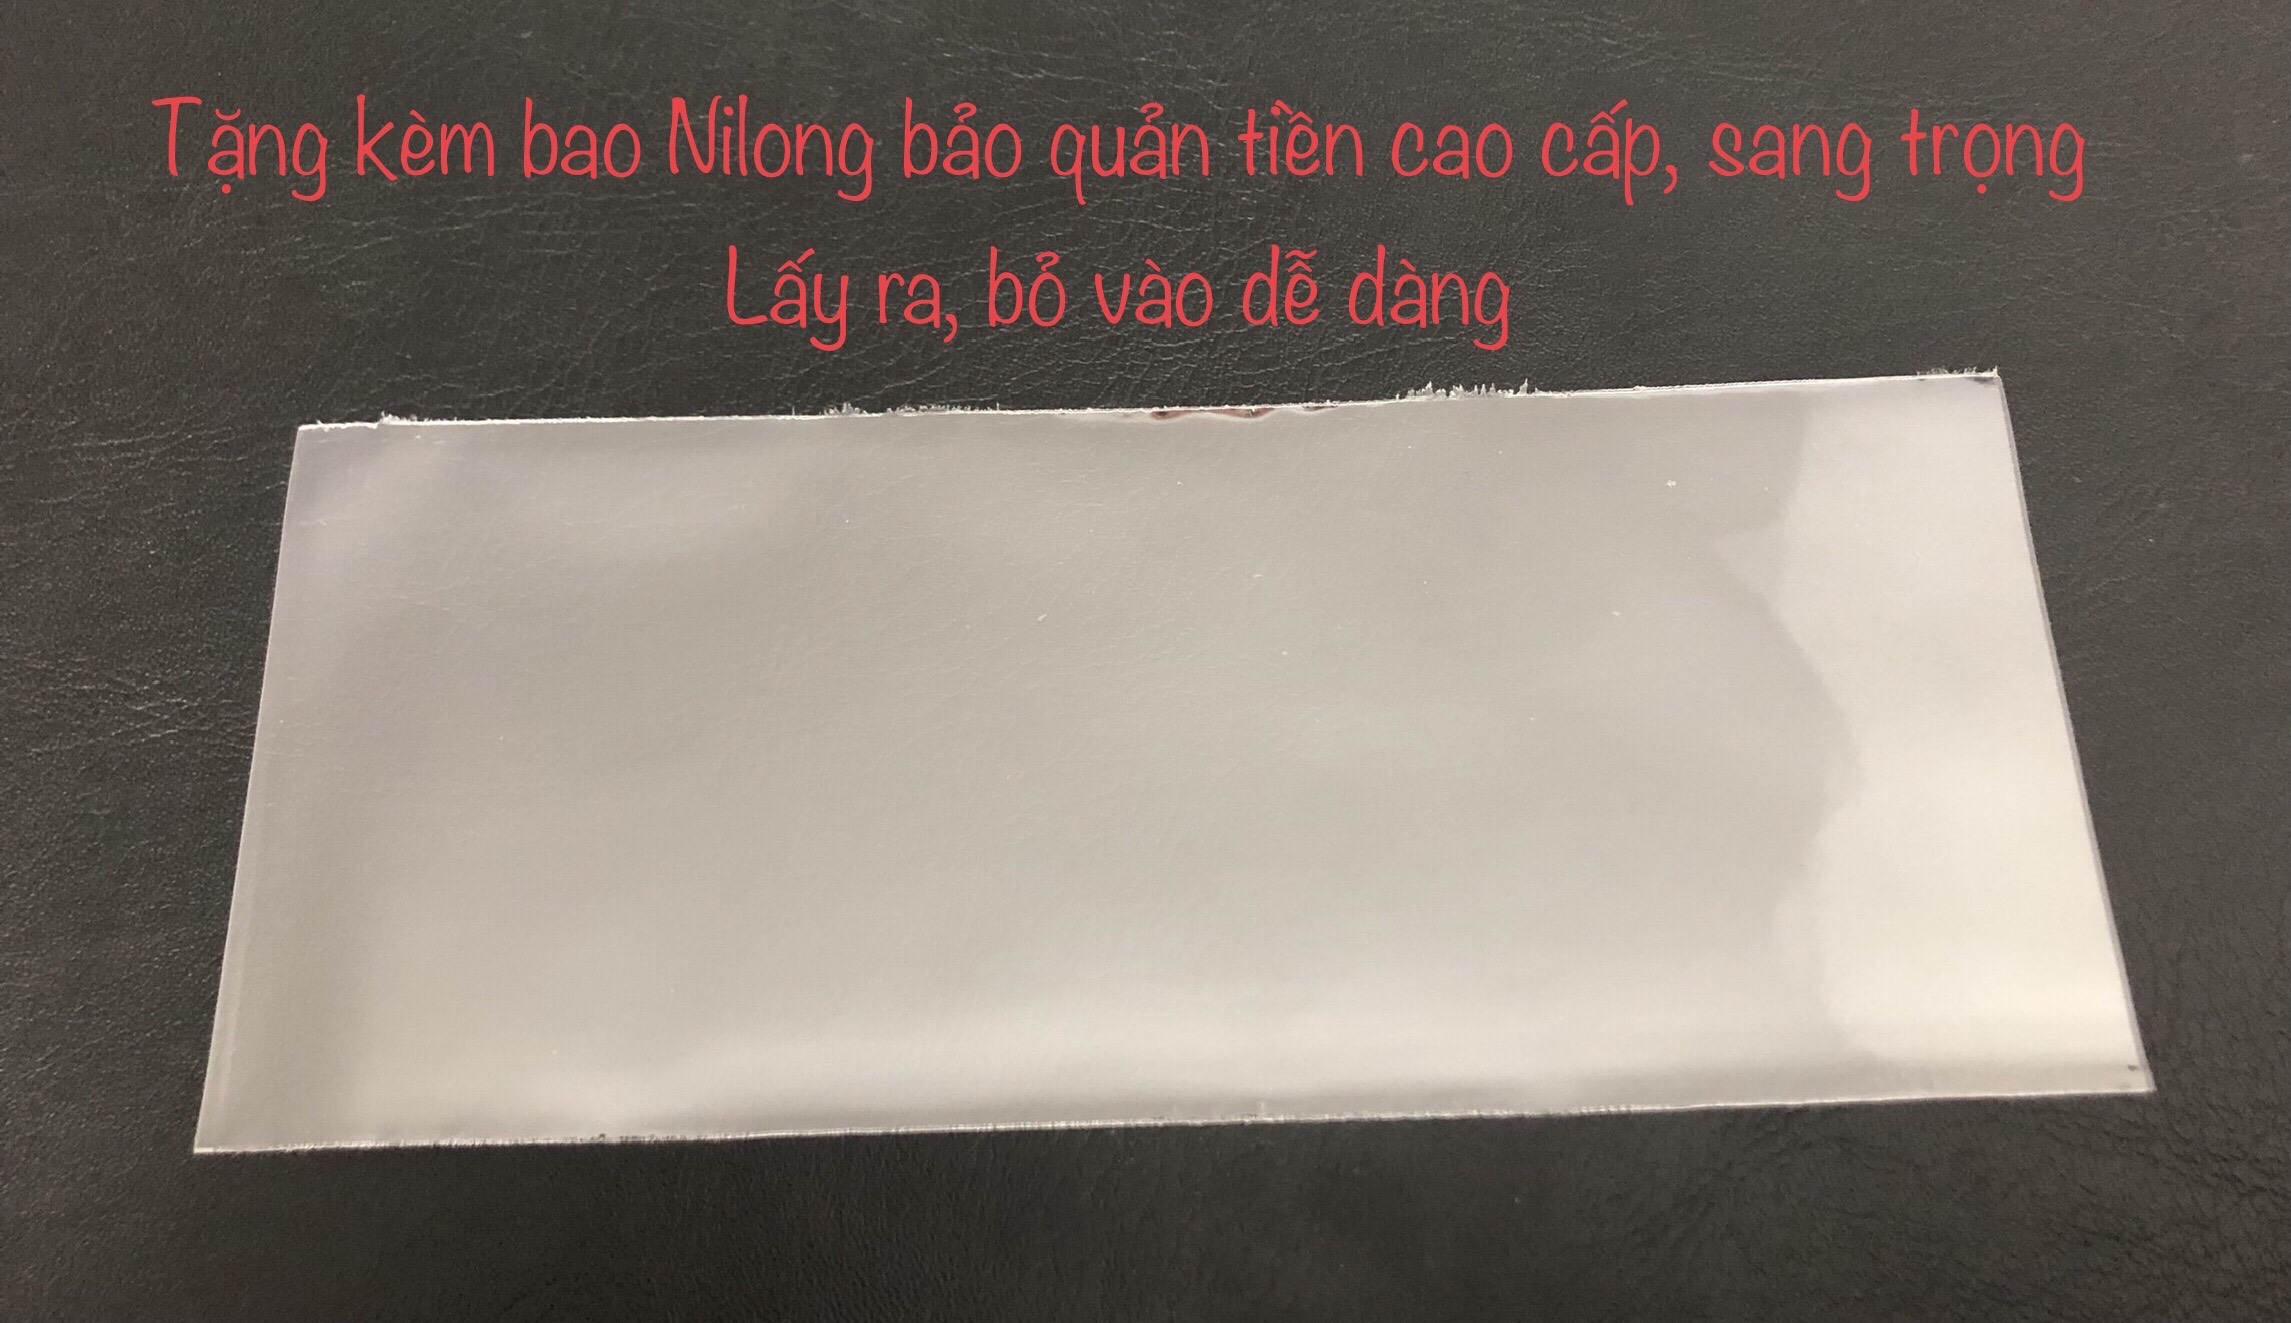 Bộ 6 tờ tiền Hoa văn Việt Nam, tiền xưa sưu tầm